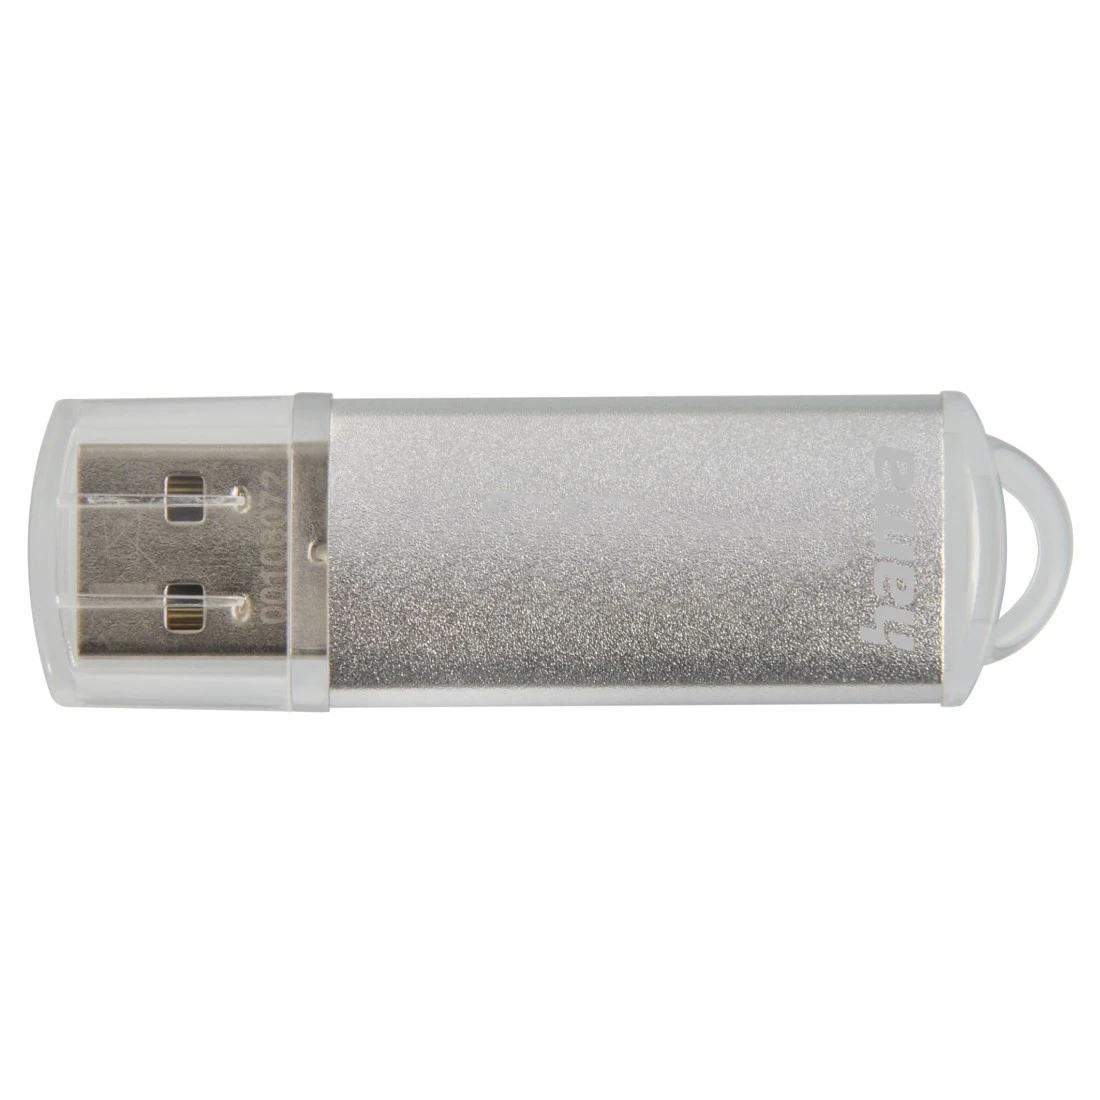 USB-Stick "Laeta", USB 2.0, 128 GB, 15MB/s, Silber | Hama